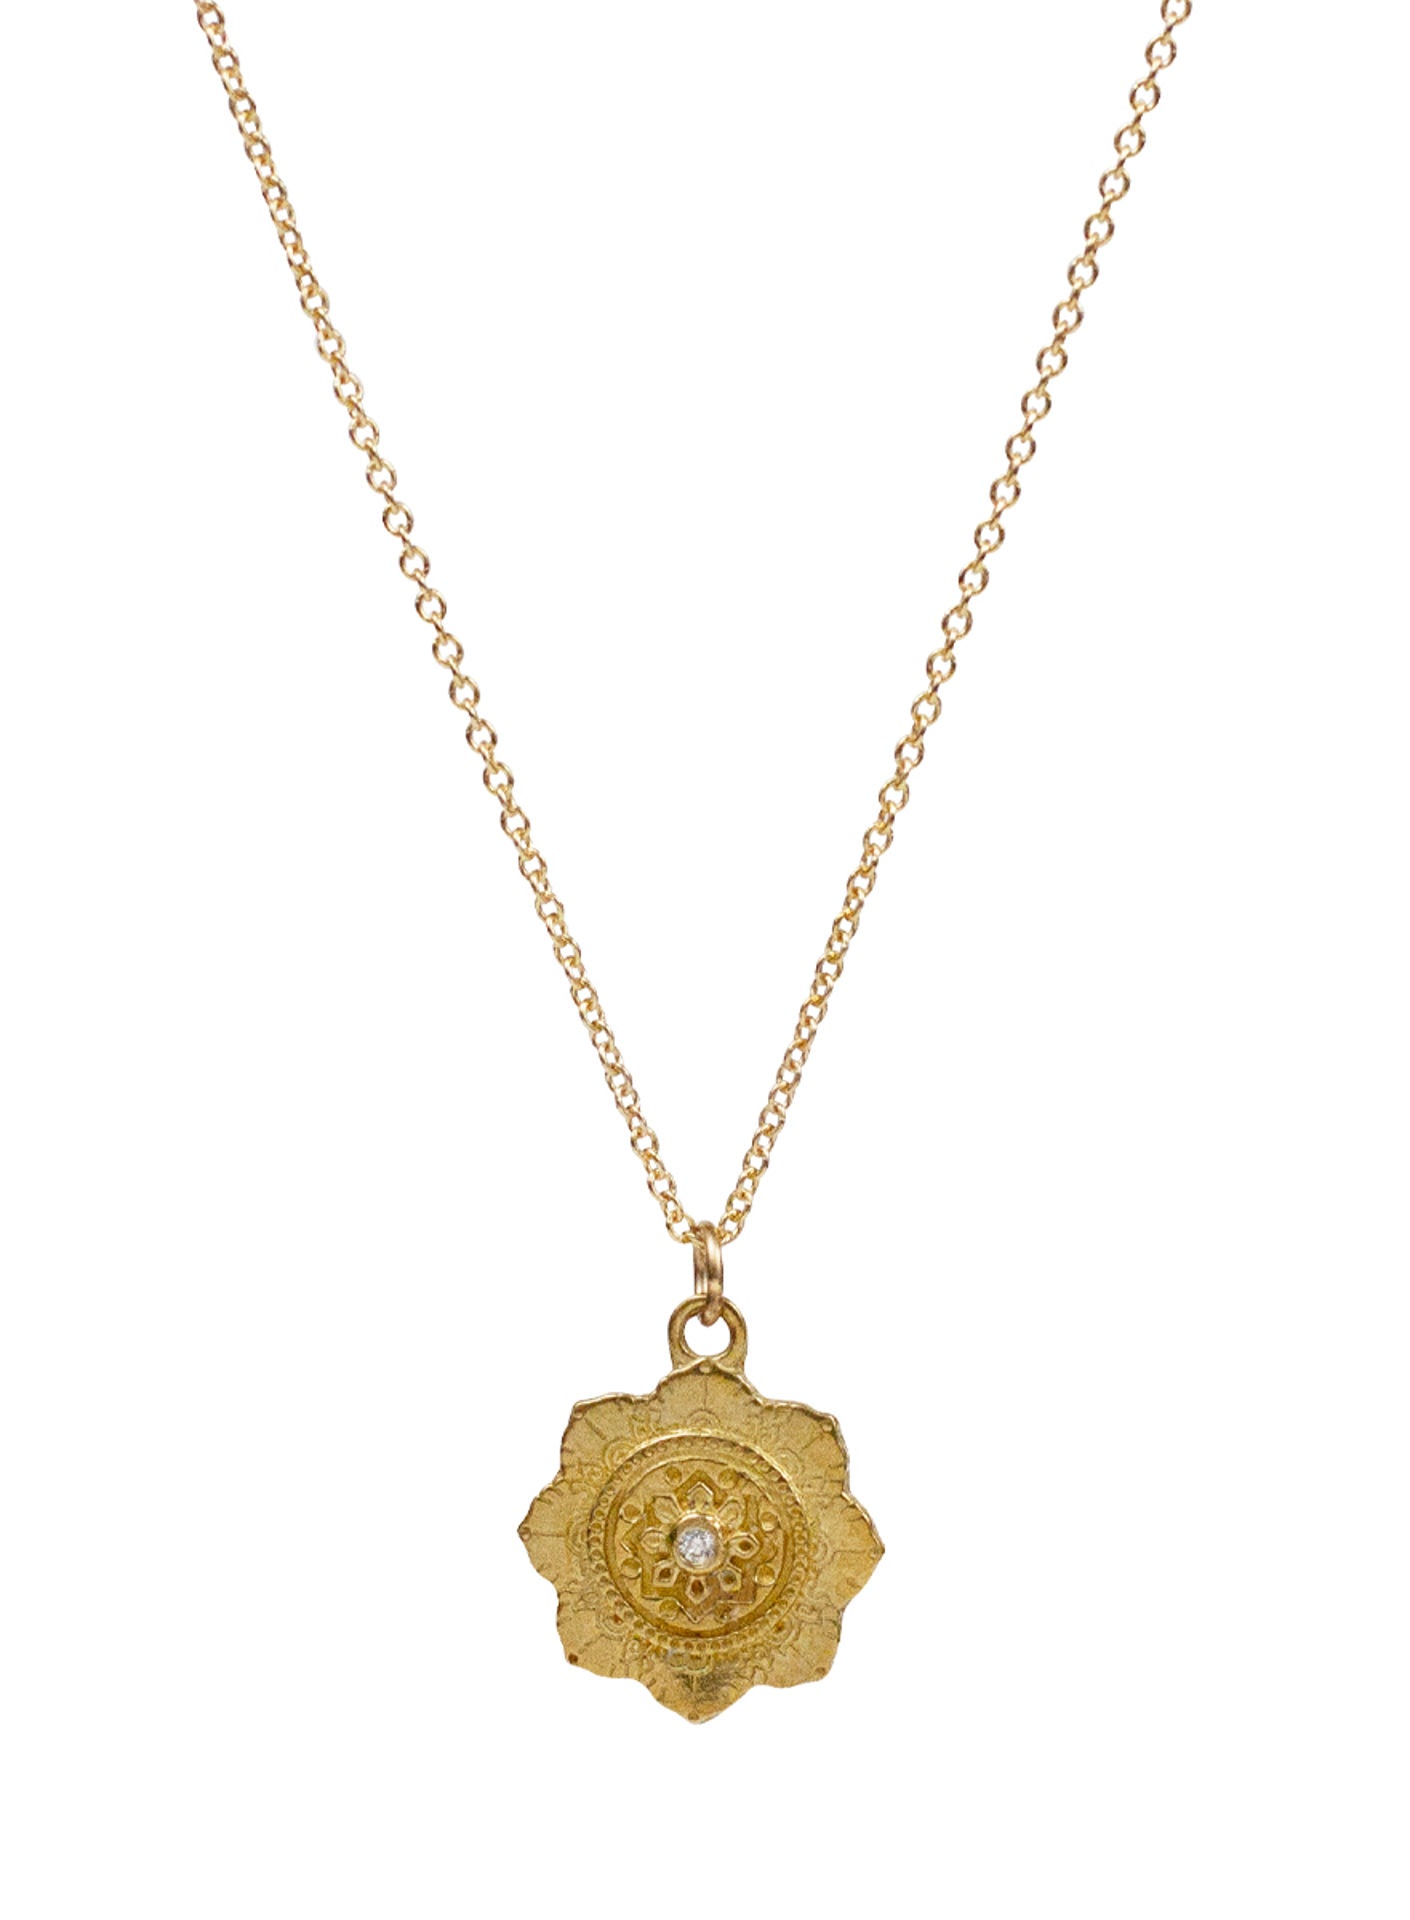 Chakra Necklace - Small "spiritual alignment"